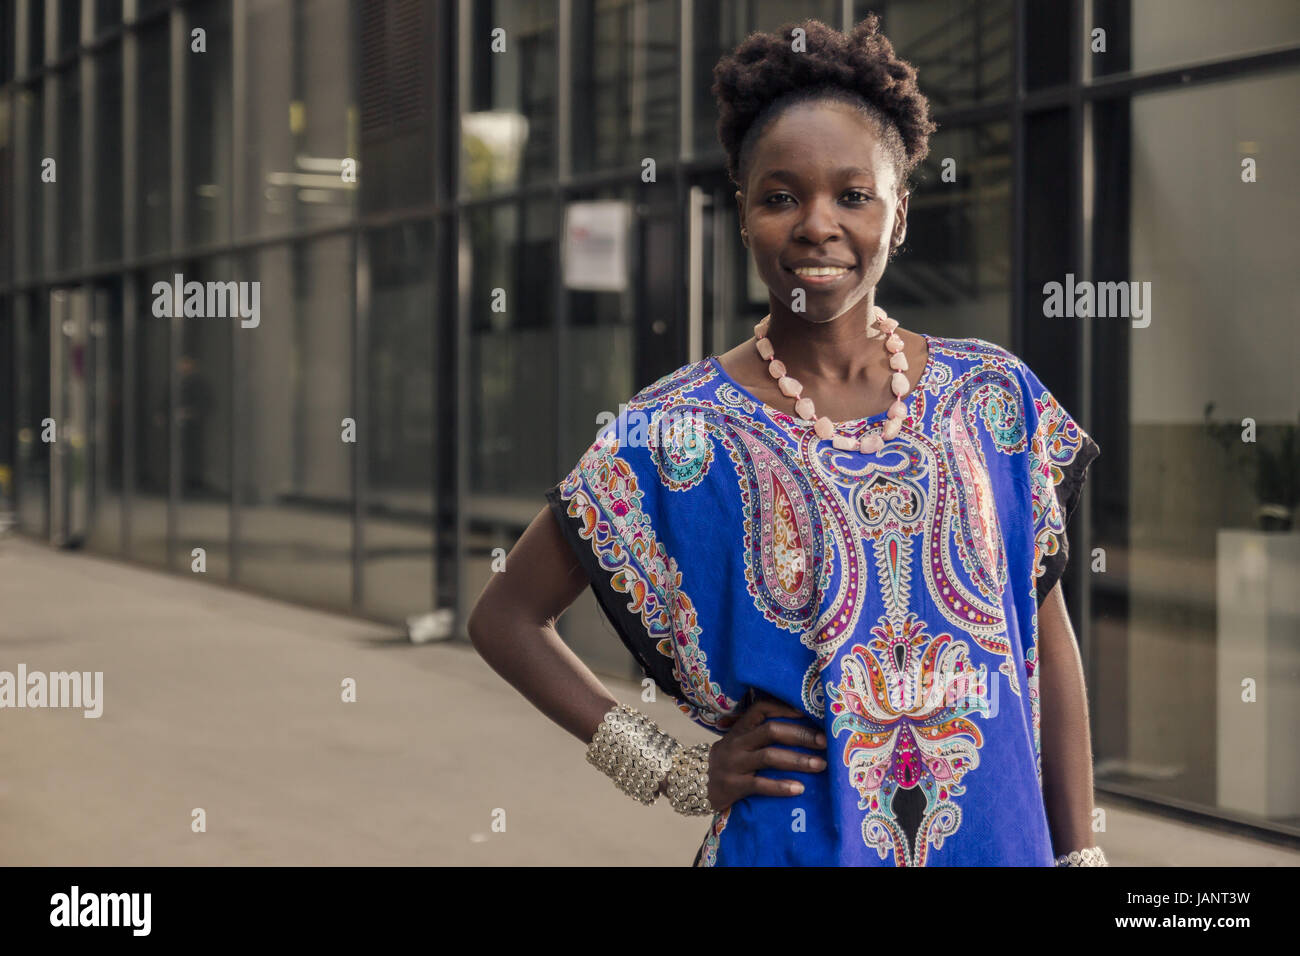 L'un, jeune adulte, black african american woman, 29 ans, gai smiling face, haut du corps tourné, urbaine, du bâtiment, à la recherche d'appareil photo, out Banque D'Images